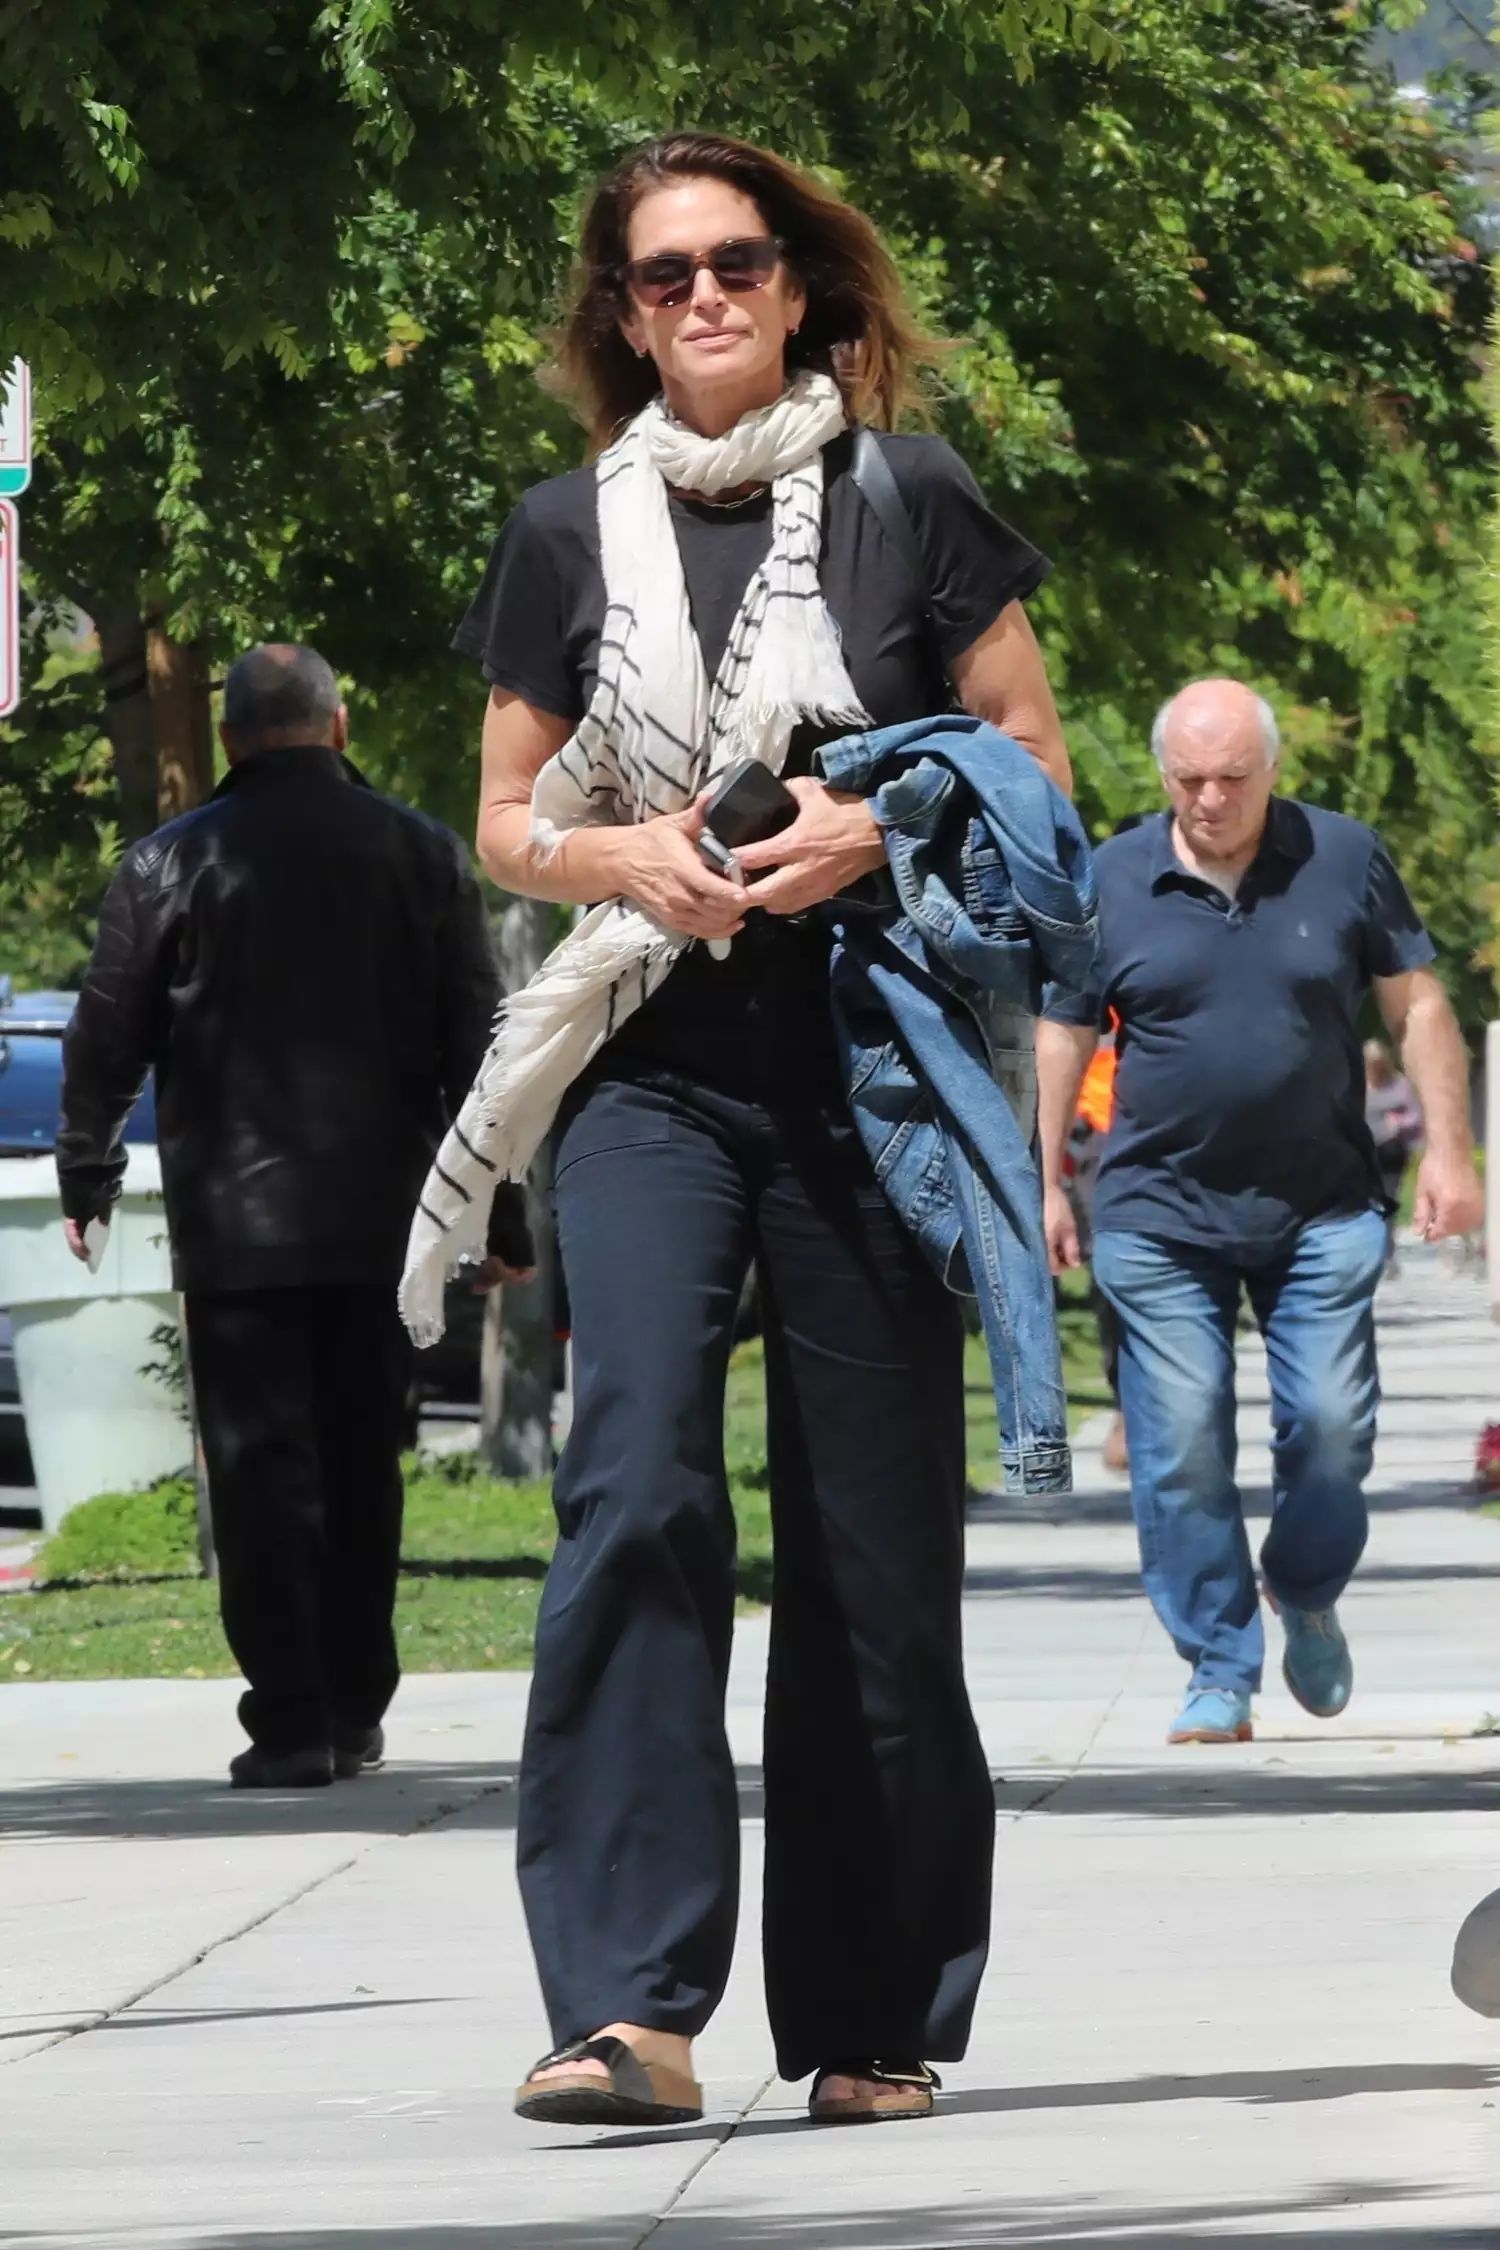 Φόρεσε τα σανδάλια της Cindy Crawford κάνοντας το πιο άνετο ντύσιμο αυτή τη σεζόν